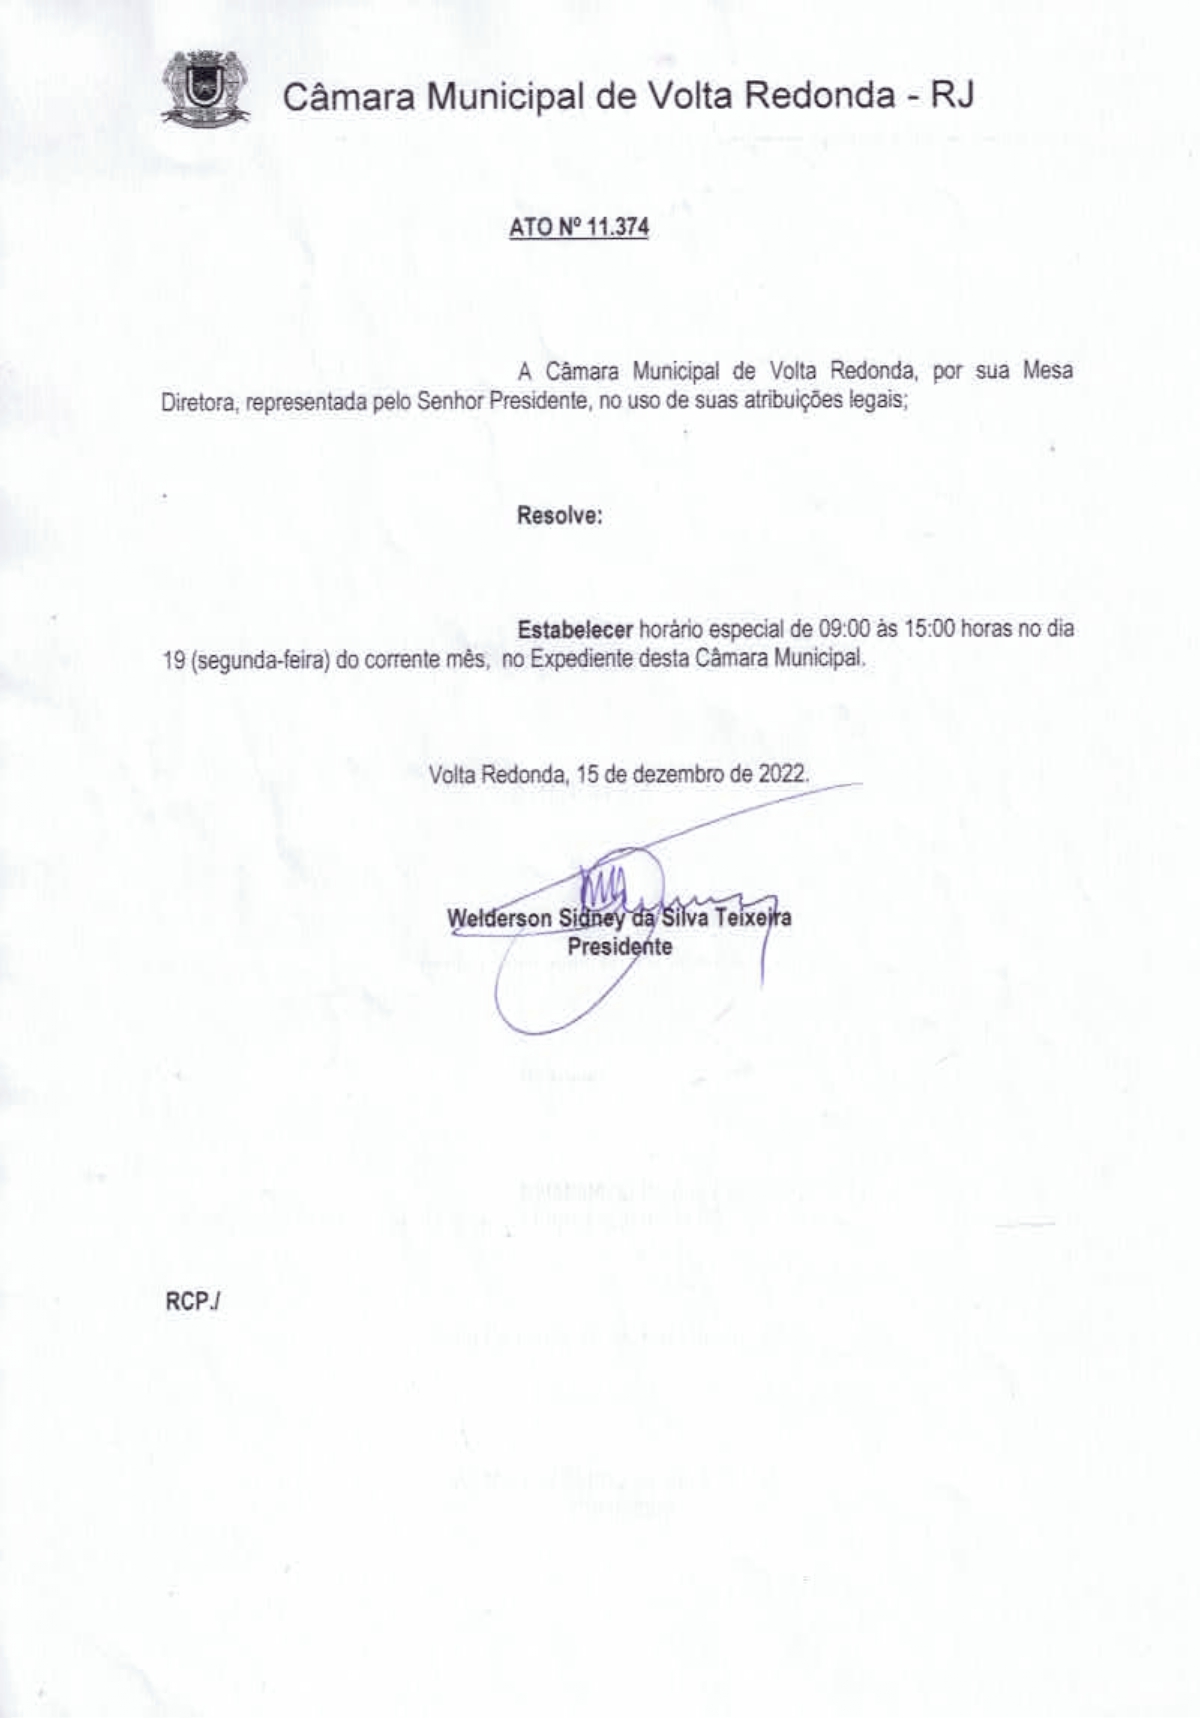 Ato nº 11.374 - Estabelece horário especial de expediente na Câmara Municipal de Volta Redonda